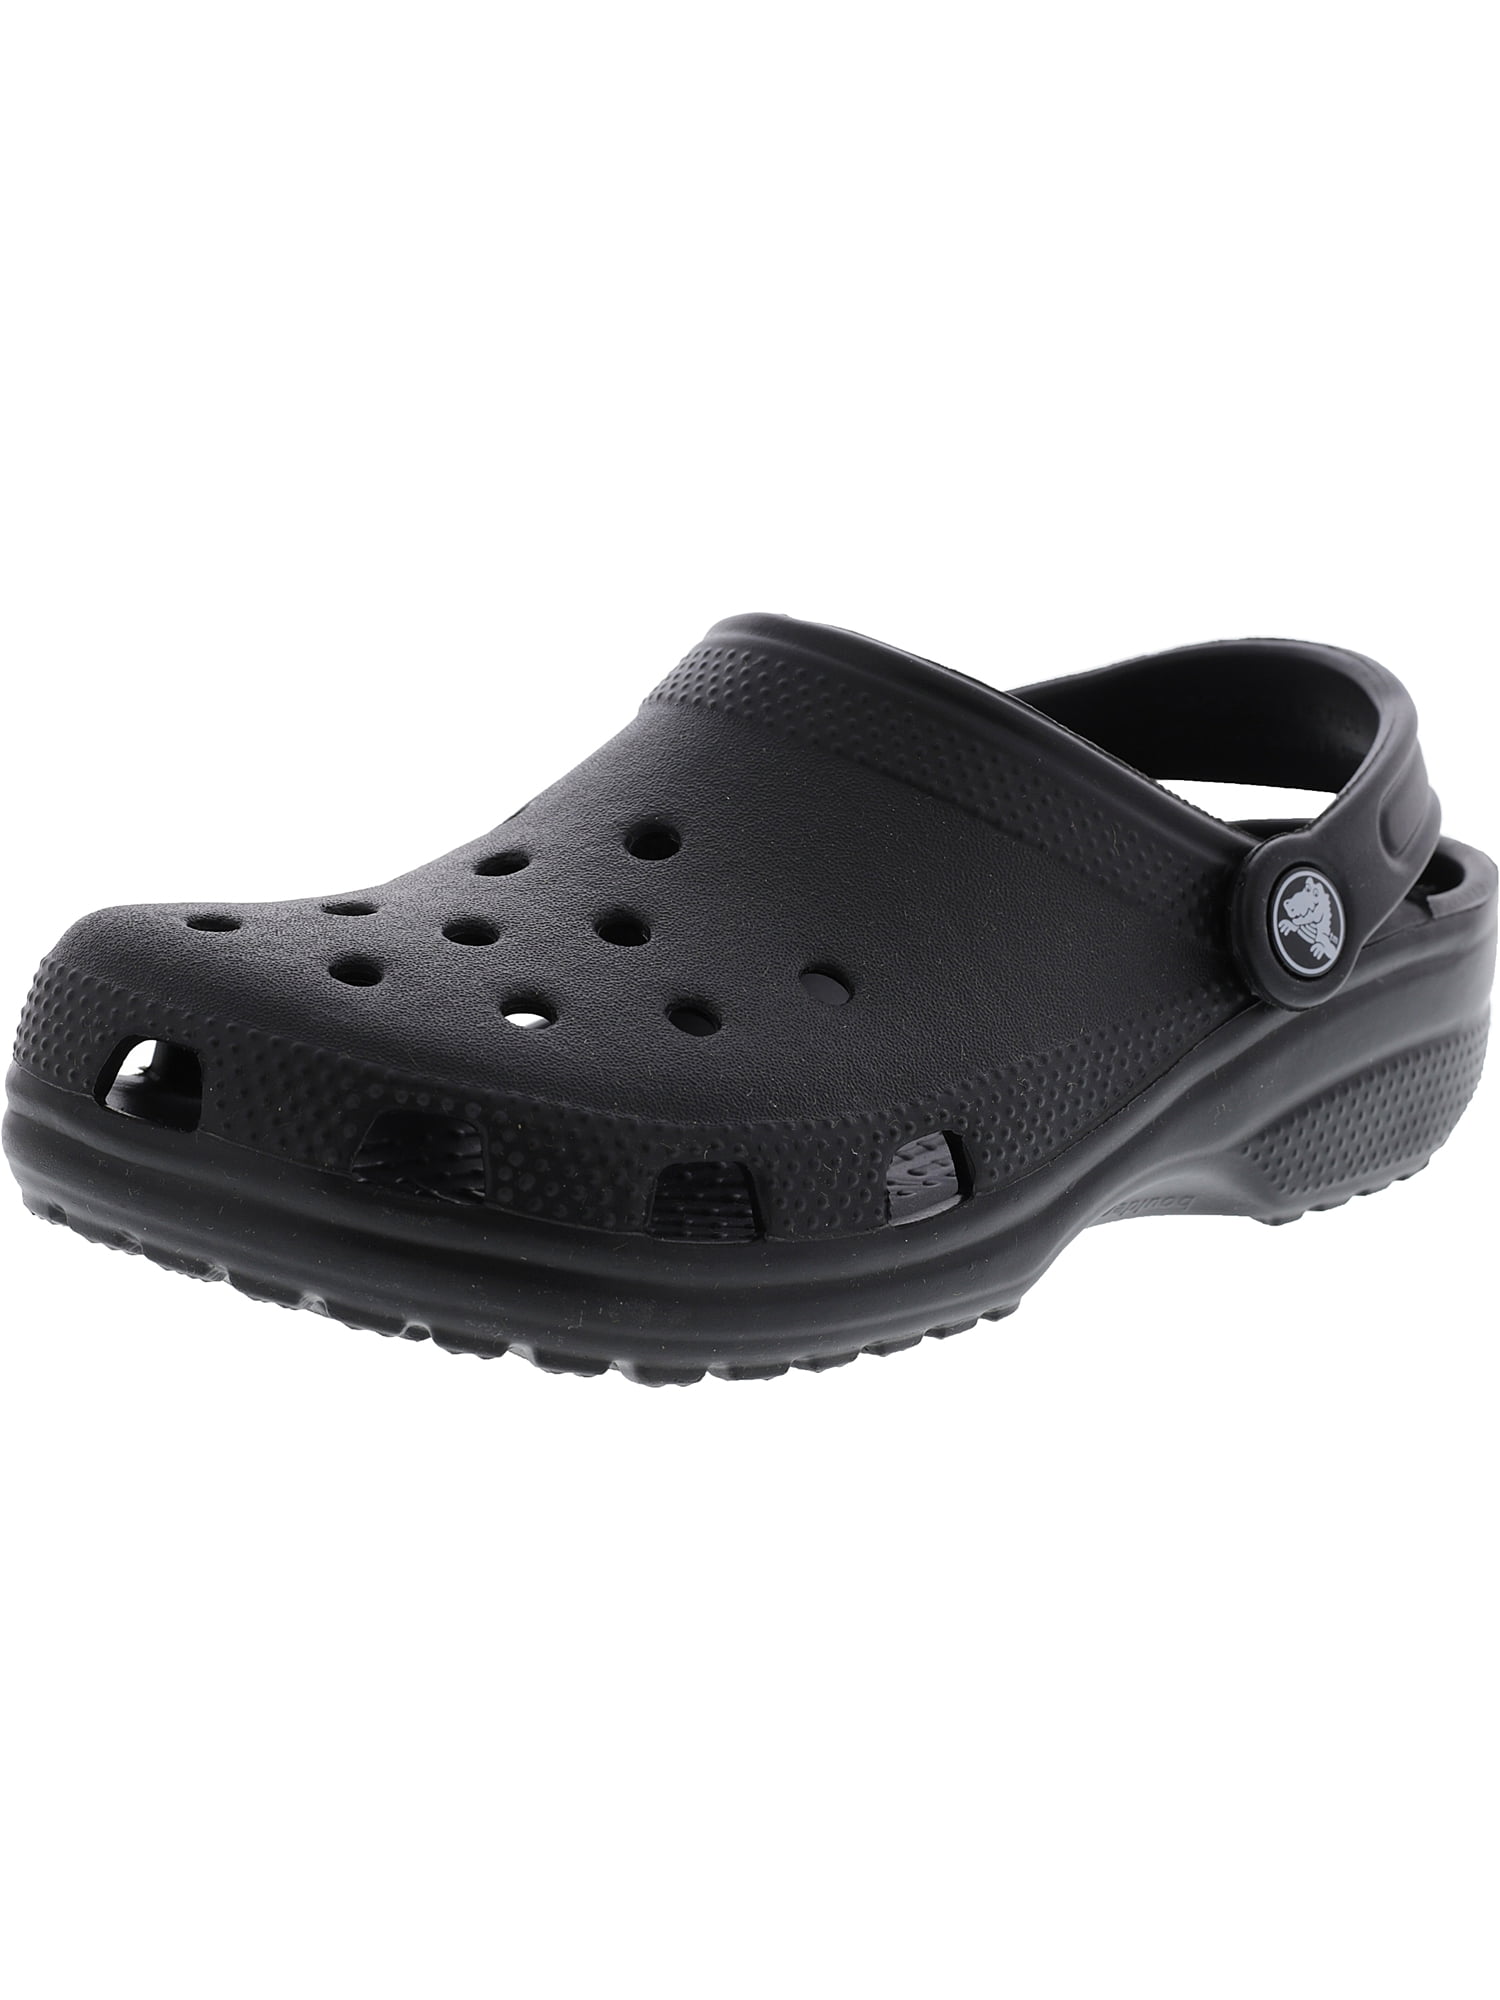 Crocs Classic Clog Ltd Black Clogs - 8M / 6M | Walmart Canada